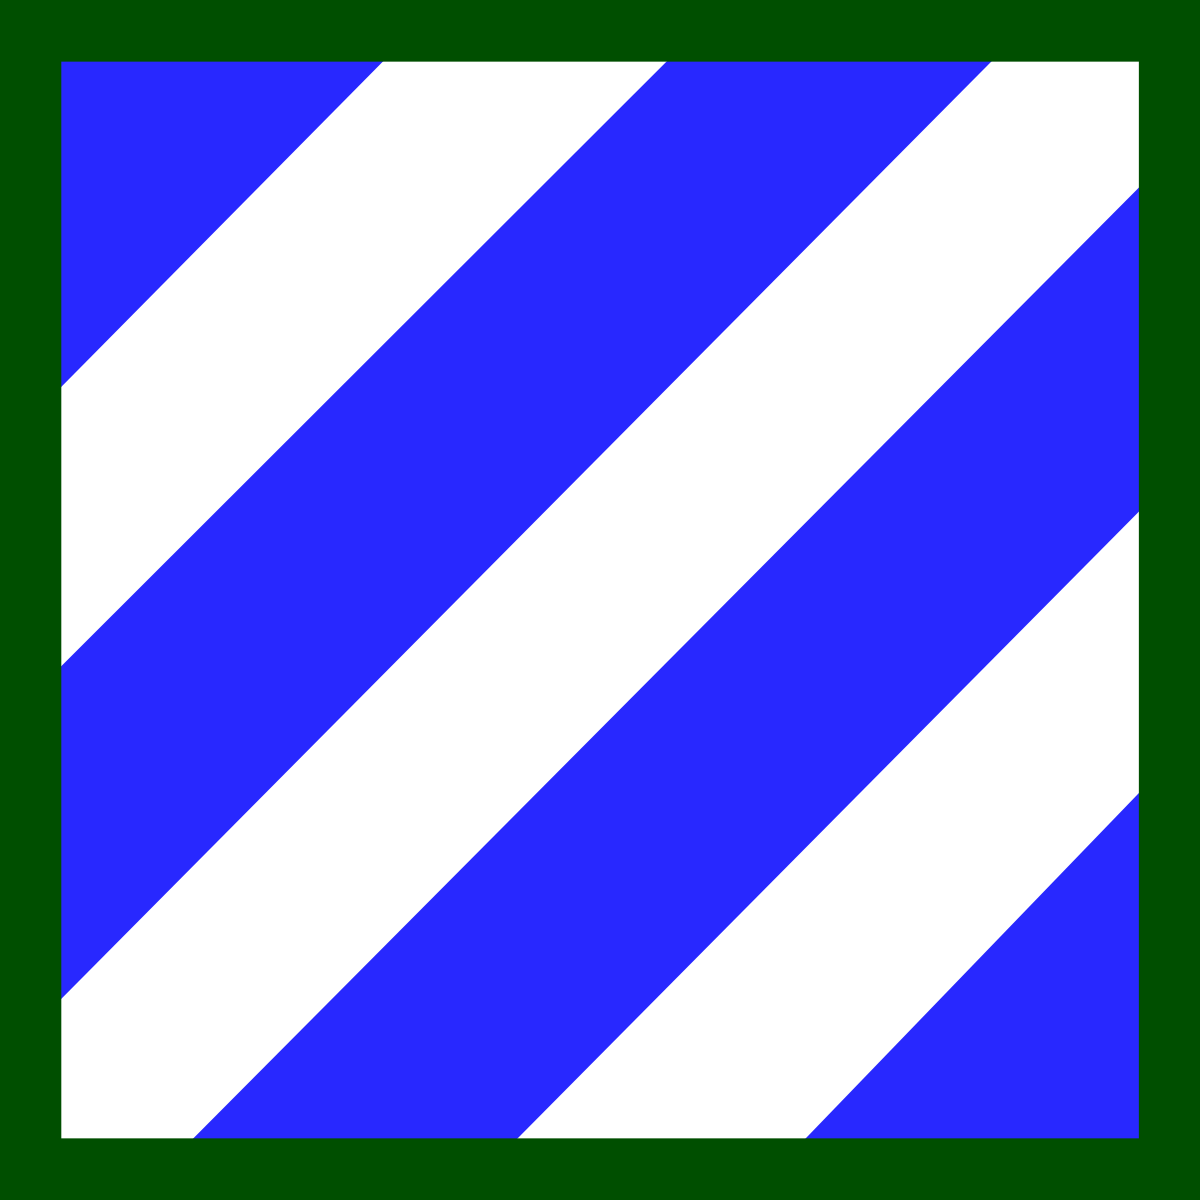 3id Army - Army Military